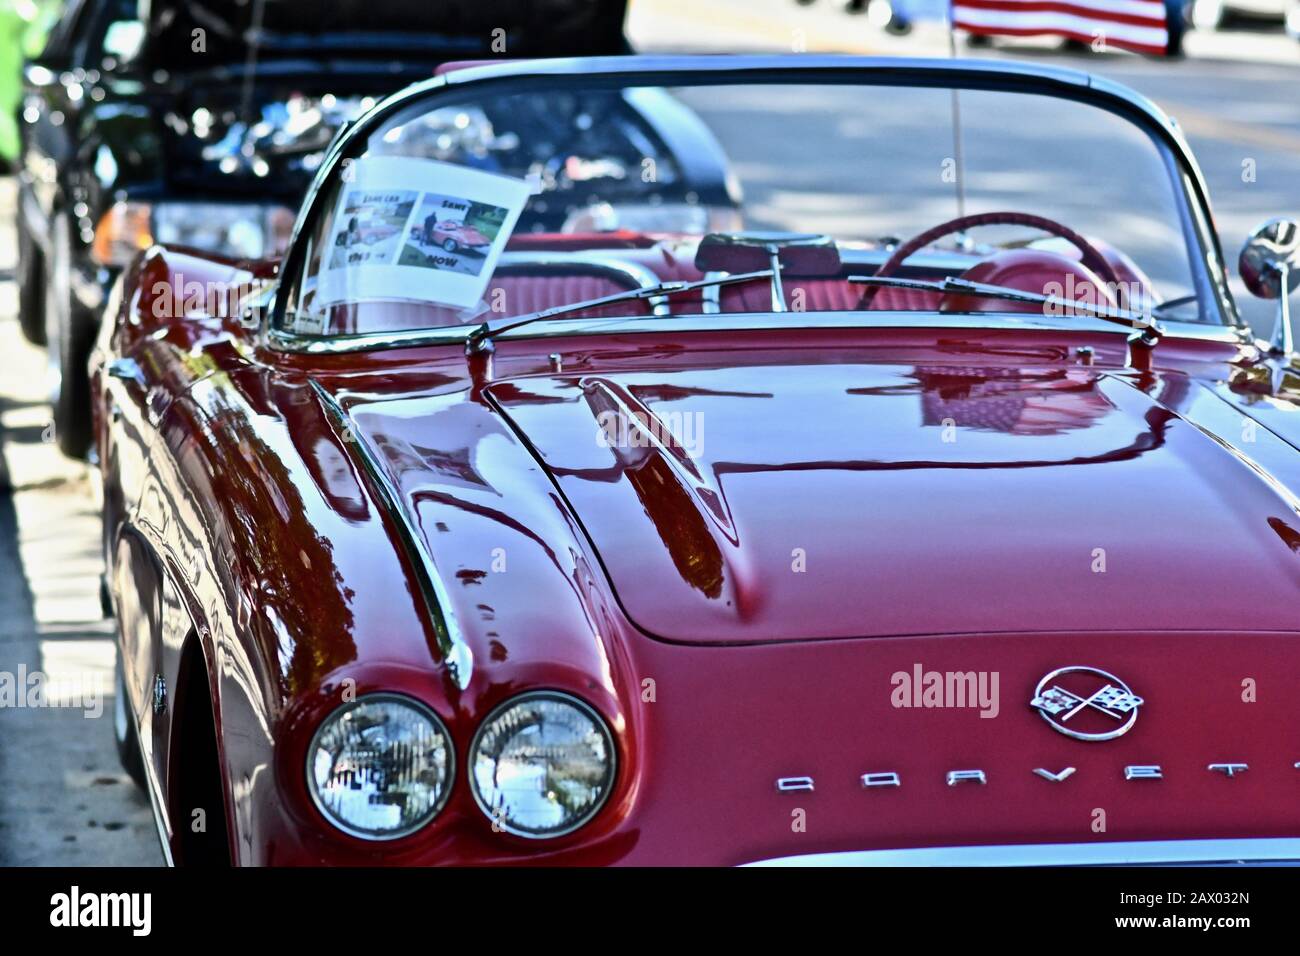 Downers GROVE, STATI UNITI - Giu 07, 2019: Una vecchia vettura Corvette rossa nel parcheggio di Downers Grove, Stati Uniti Foto Stock